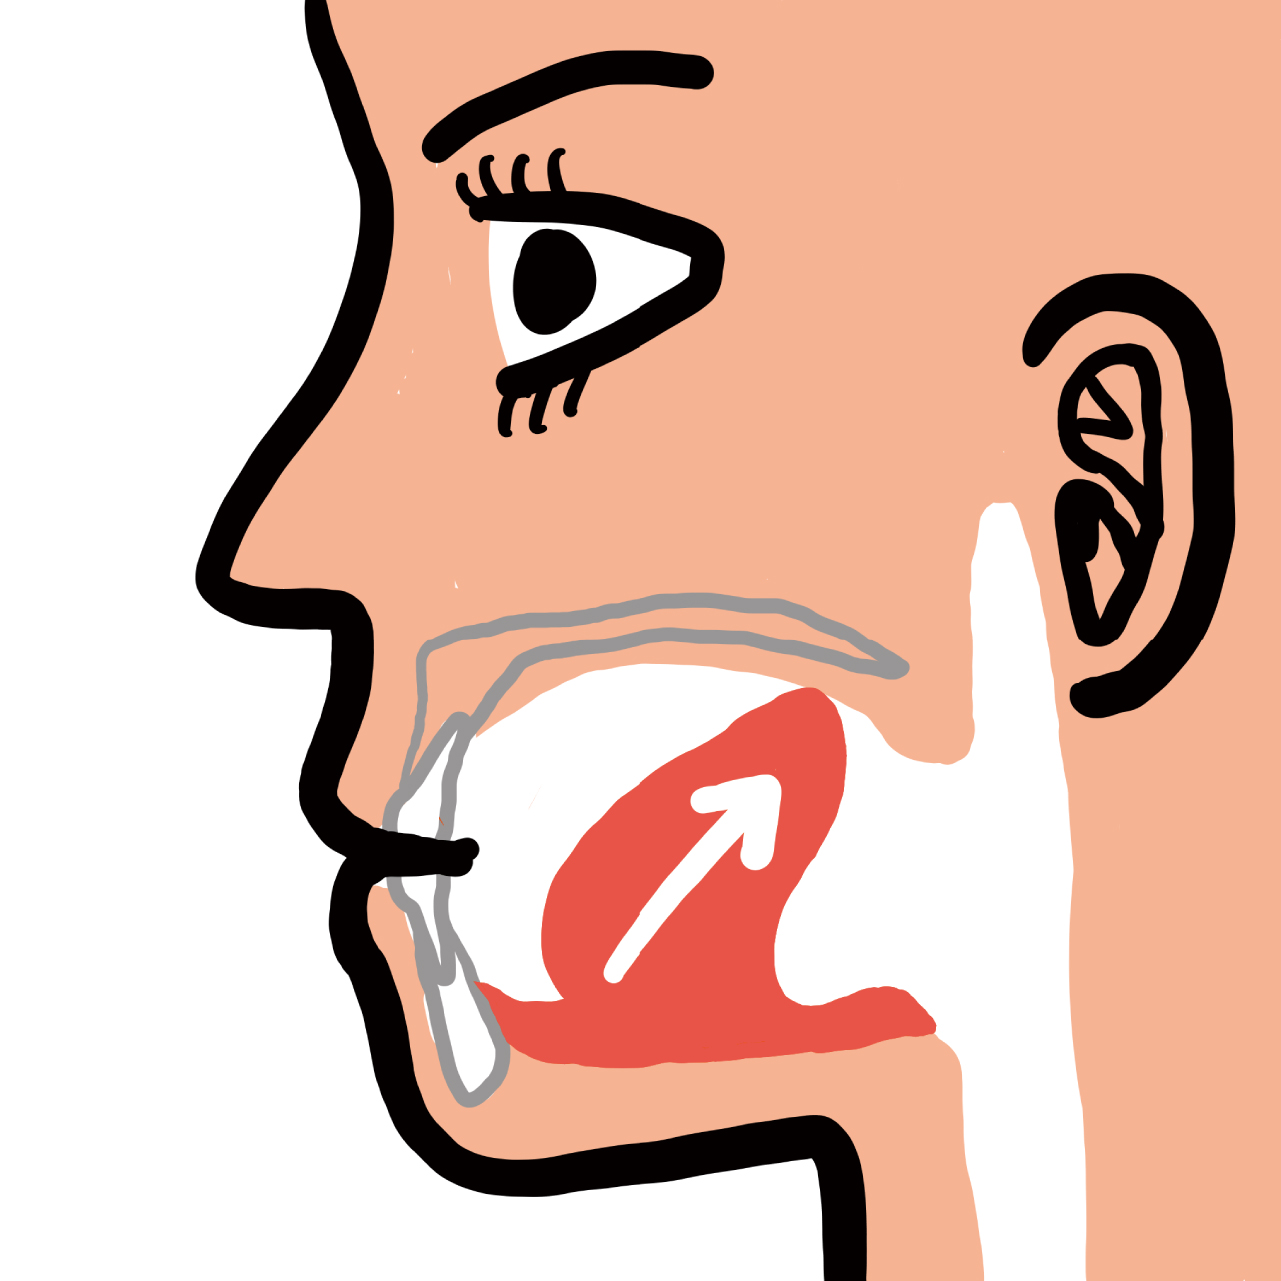 舌先を上前歯の歯茎の突起に添え、全力で舌先から舌全体を奥に引っ込めて